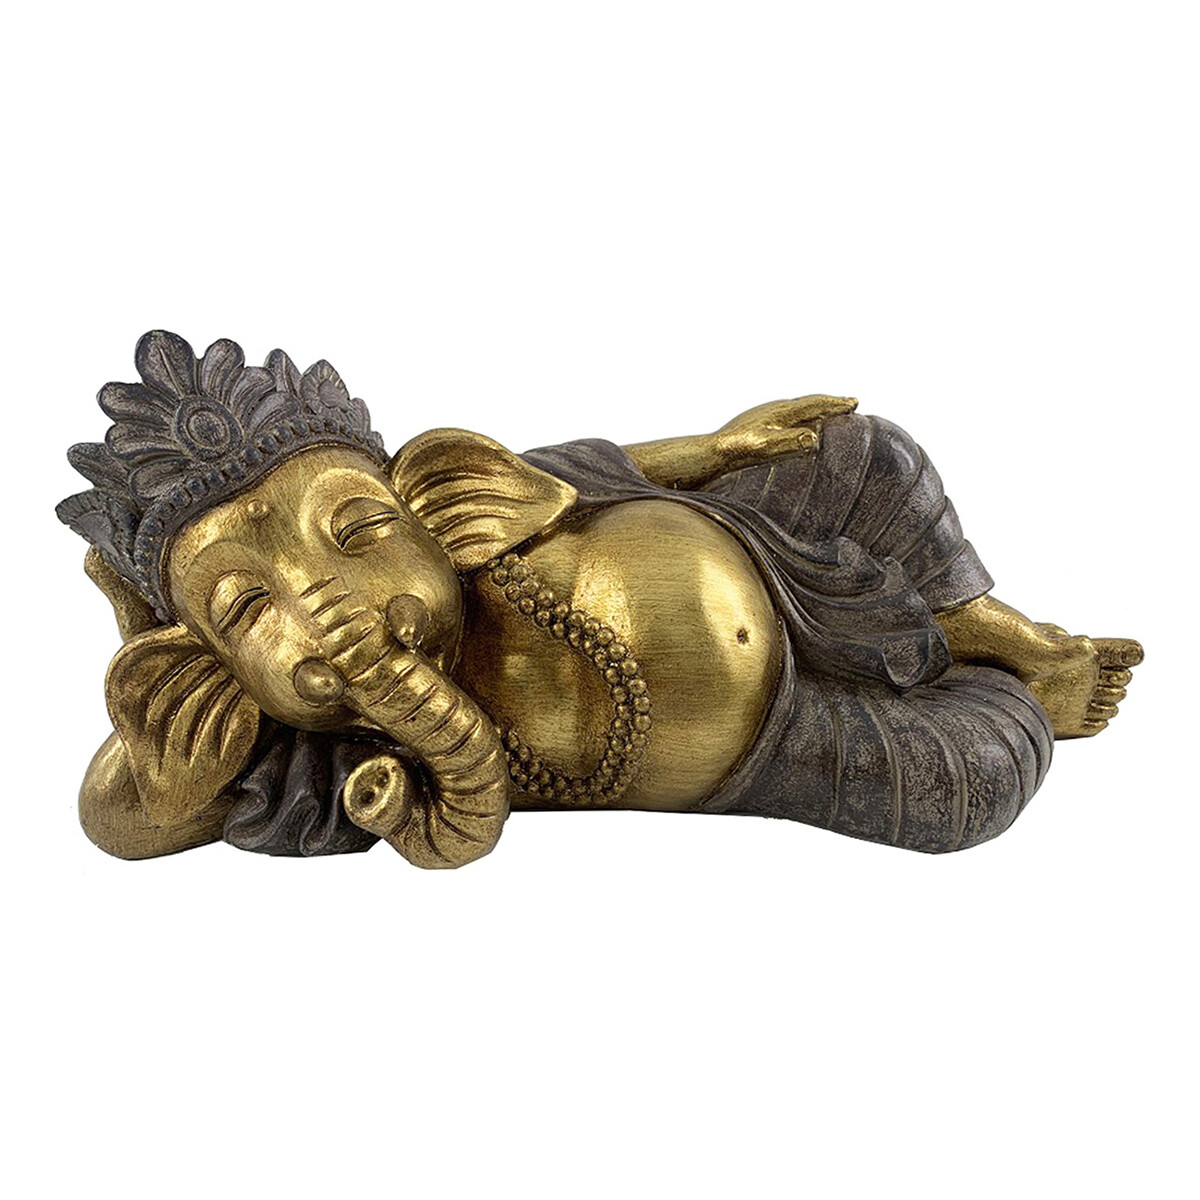 Dom Statuetki i figurki  Signes Grimalt Rysunek Ganesha Leżący Złoty